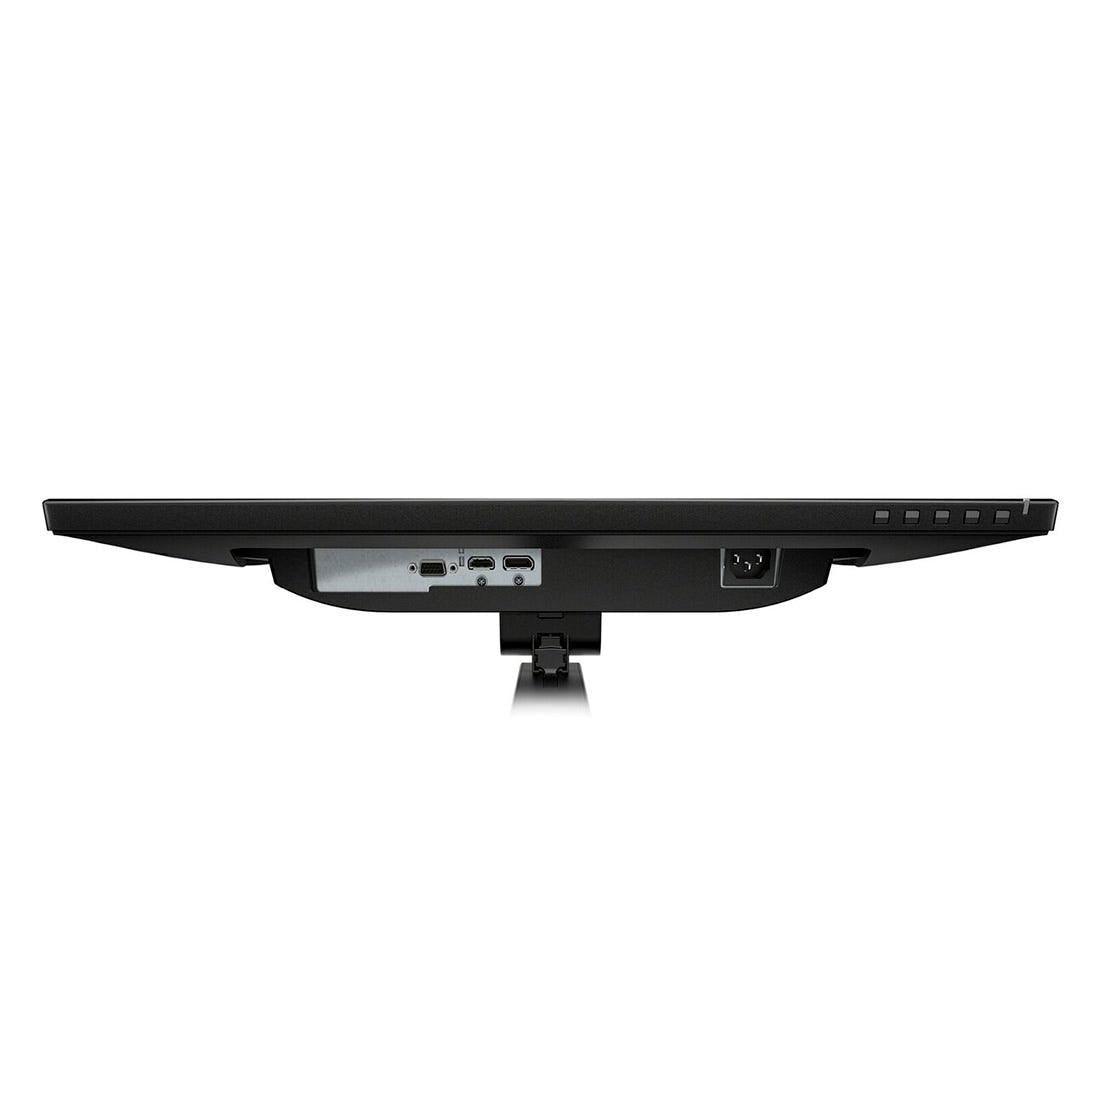 Monitor HP HPCM P24vb G4 23,8" Full HD 3Y0Q7AA#AC4 - Mega Market